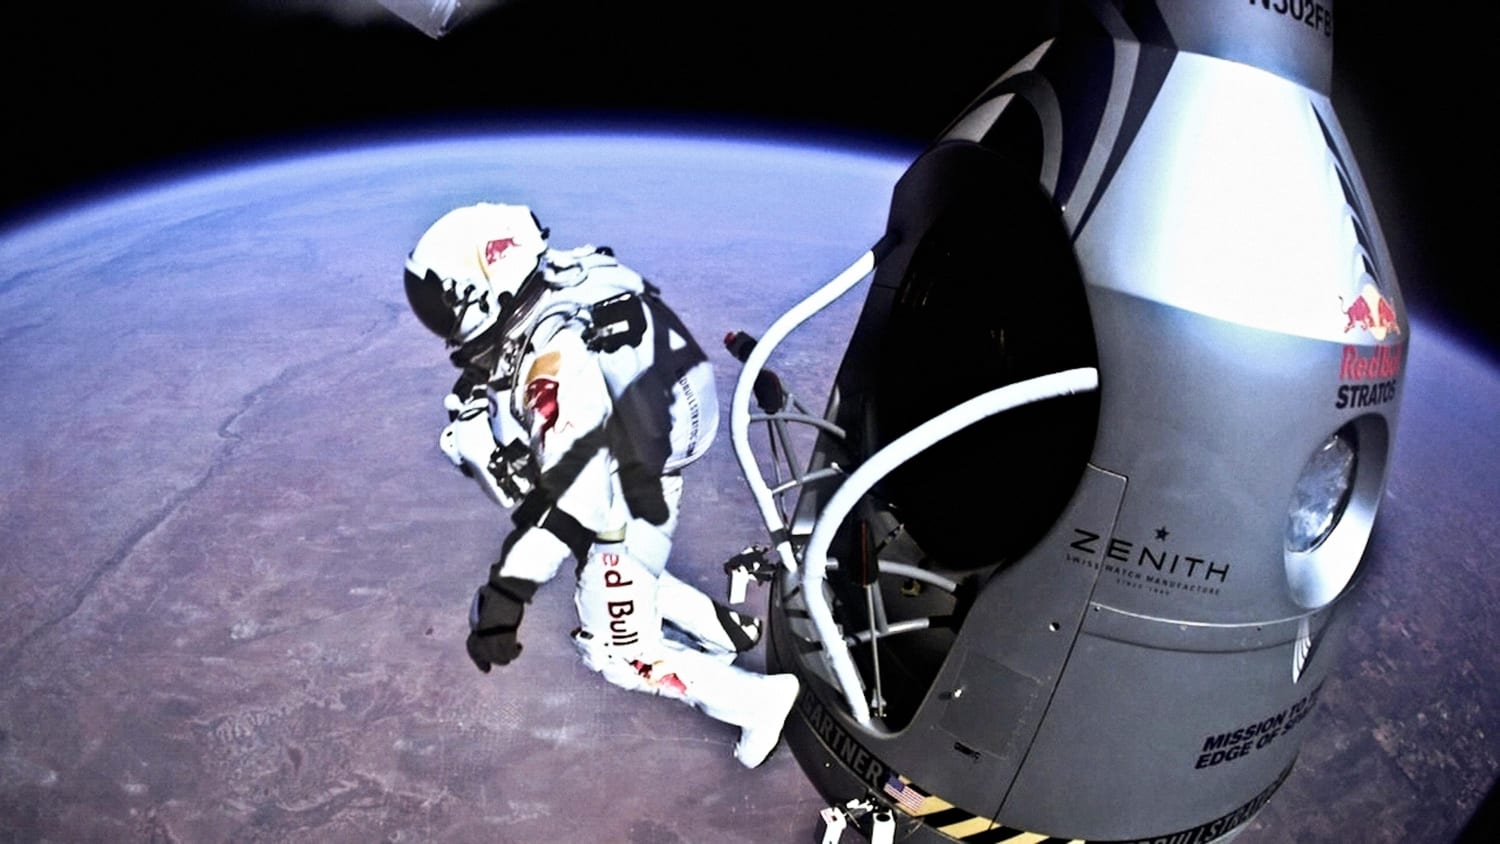 Felix Baumgartner's historic jump: Watch the POV video